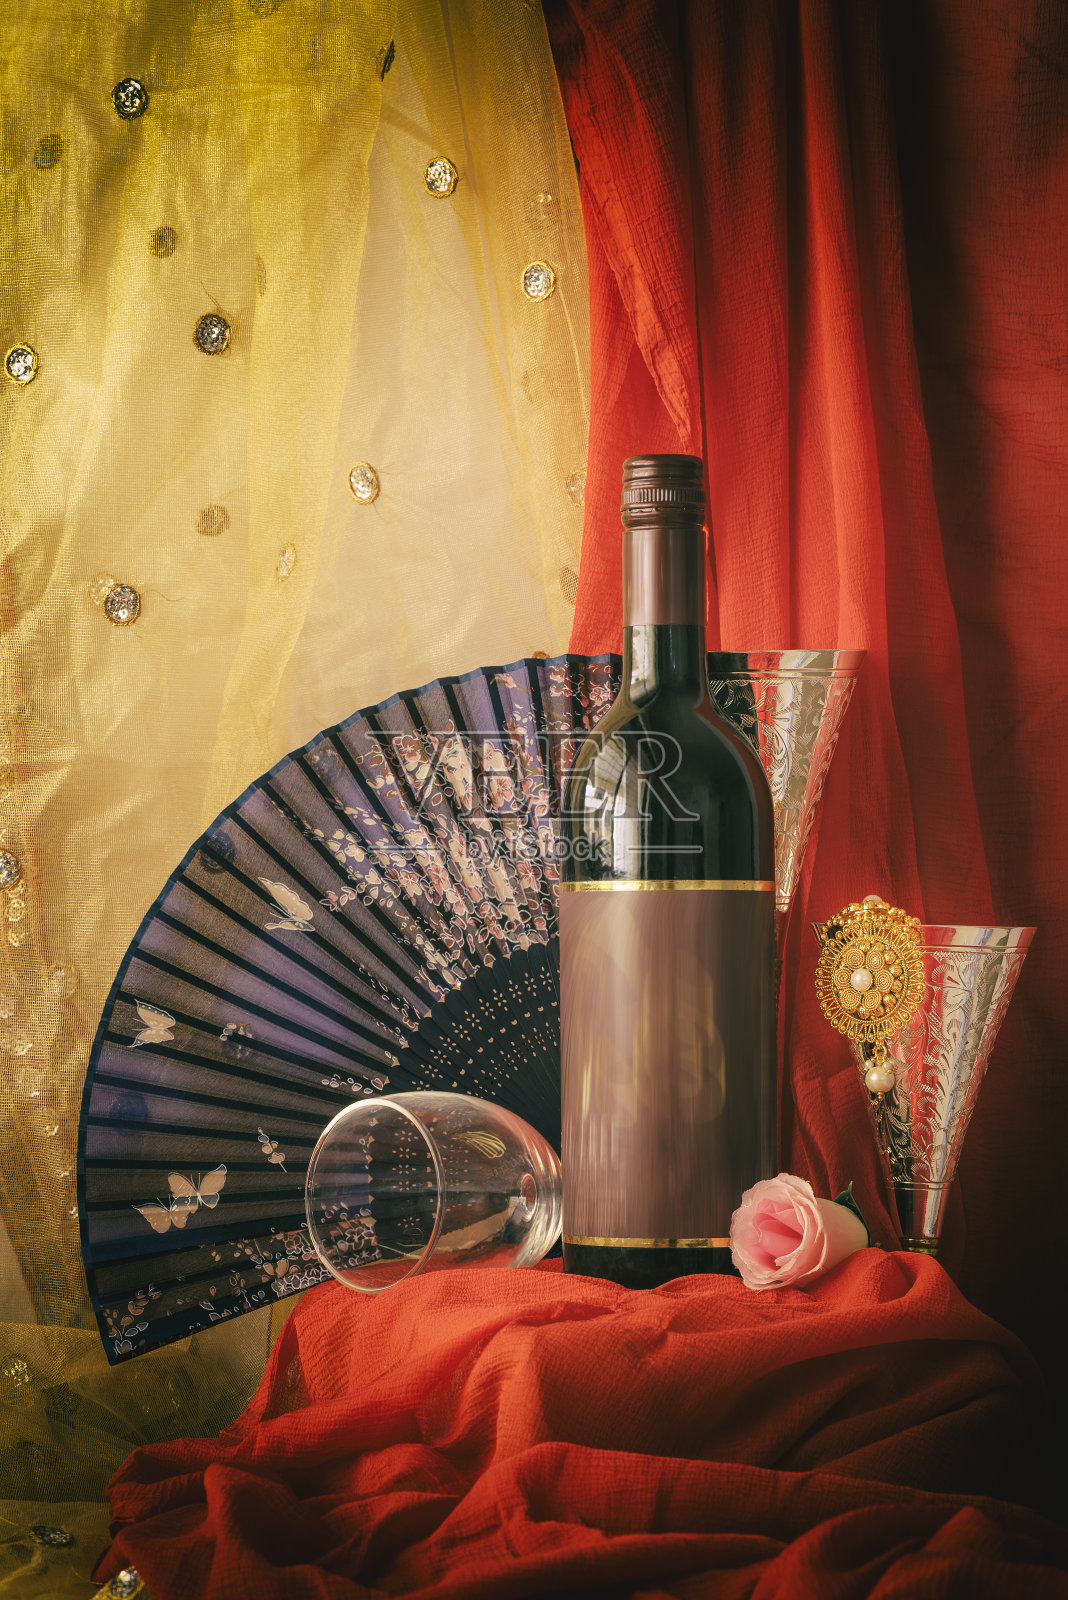 用红酒瓶、银器和酒杯庆祝的静物生活。照片摄影图片